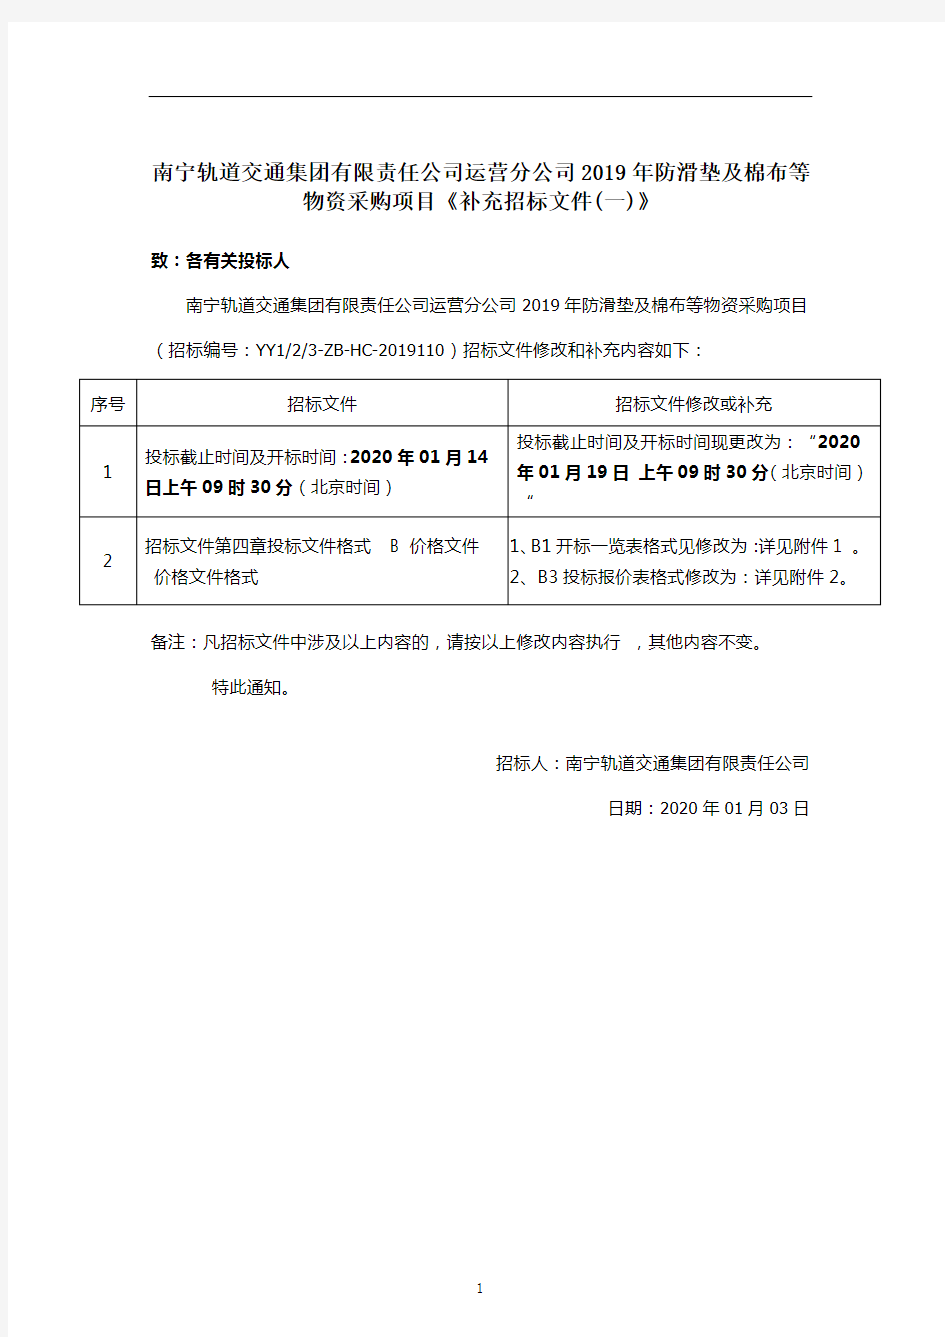 南宁轨道交通集团有限责任公司运营分公司2019年防滑垫及棉